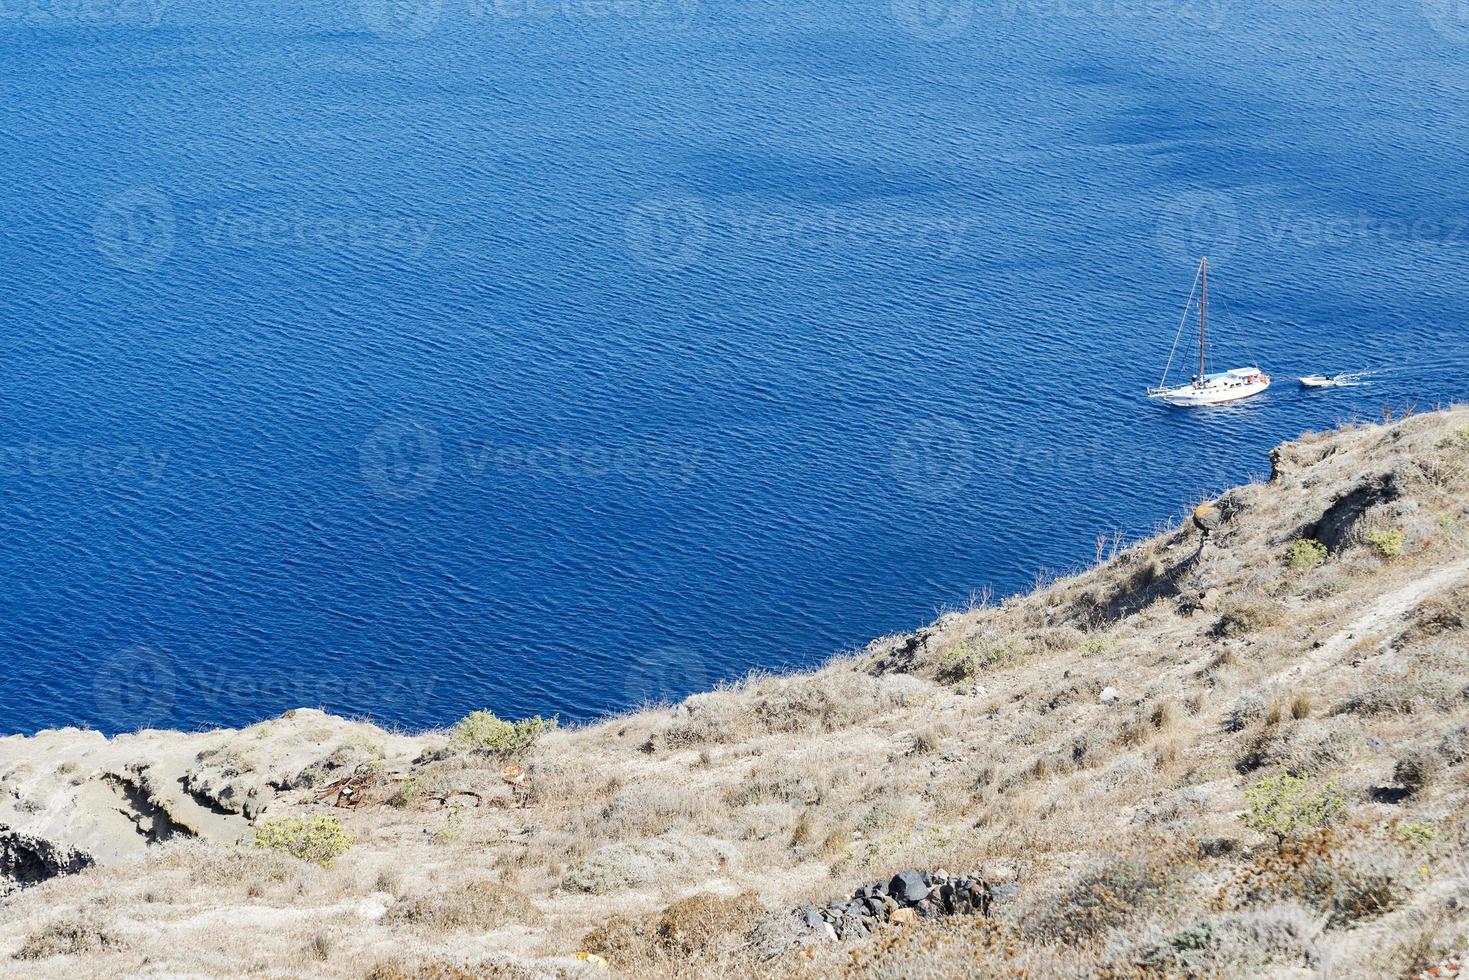 paisagem arrebatadora com vista para a ilha de santorini, grécia foto